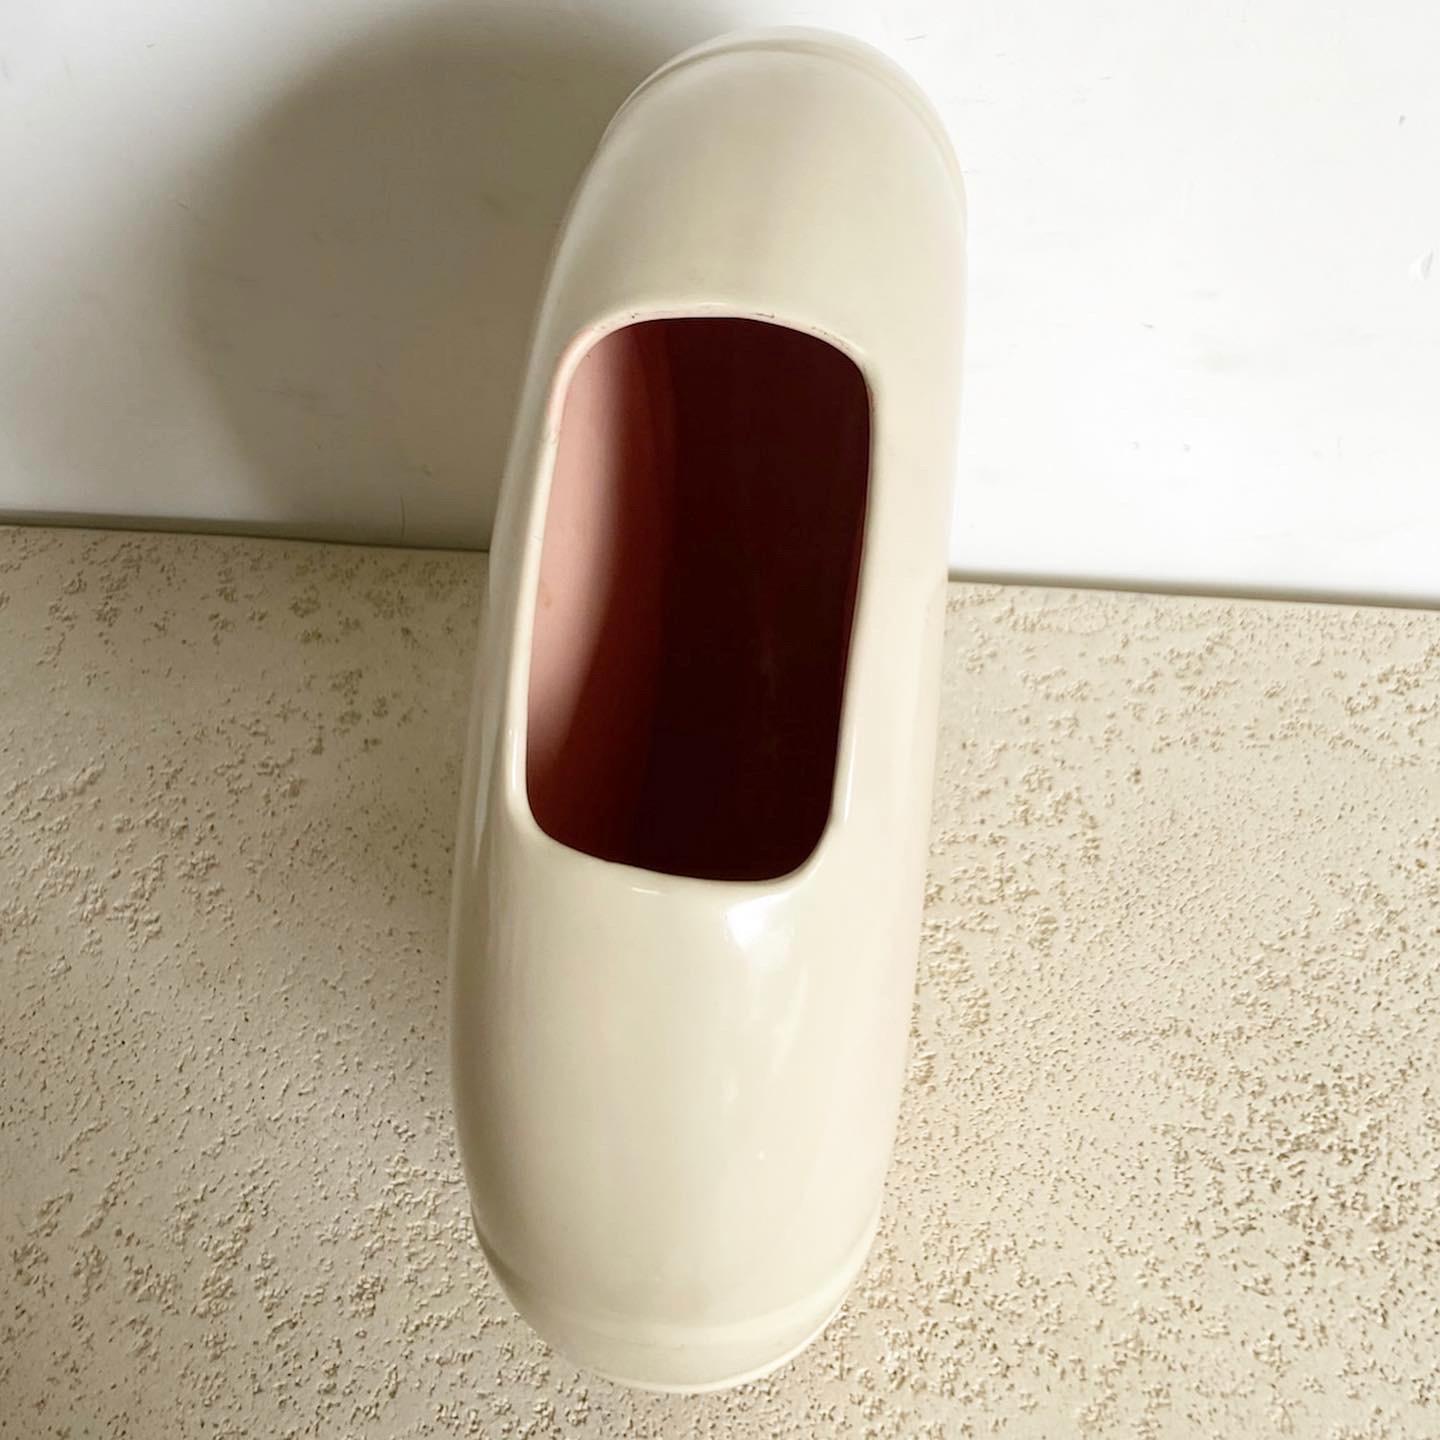 Die Postmodern Circular Cream Vase von Haeger ist ein elegantes Stück, das sowohl eine funktionale Vase als auch eine eigenständige Skulptur ist. Sein ausgewogenes, rundes Design und sein cremefarbener Farbton machen ihn zu einer vielseitigen